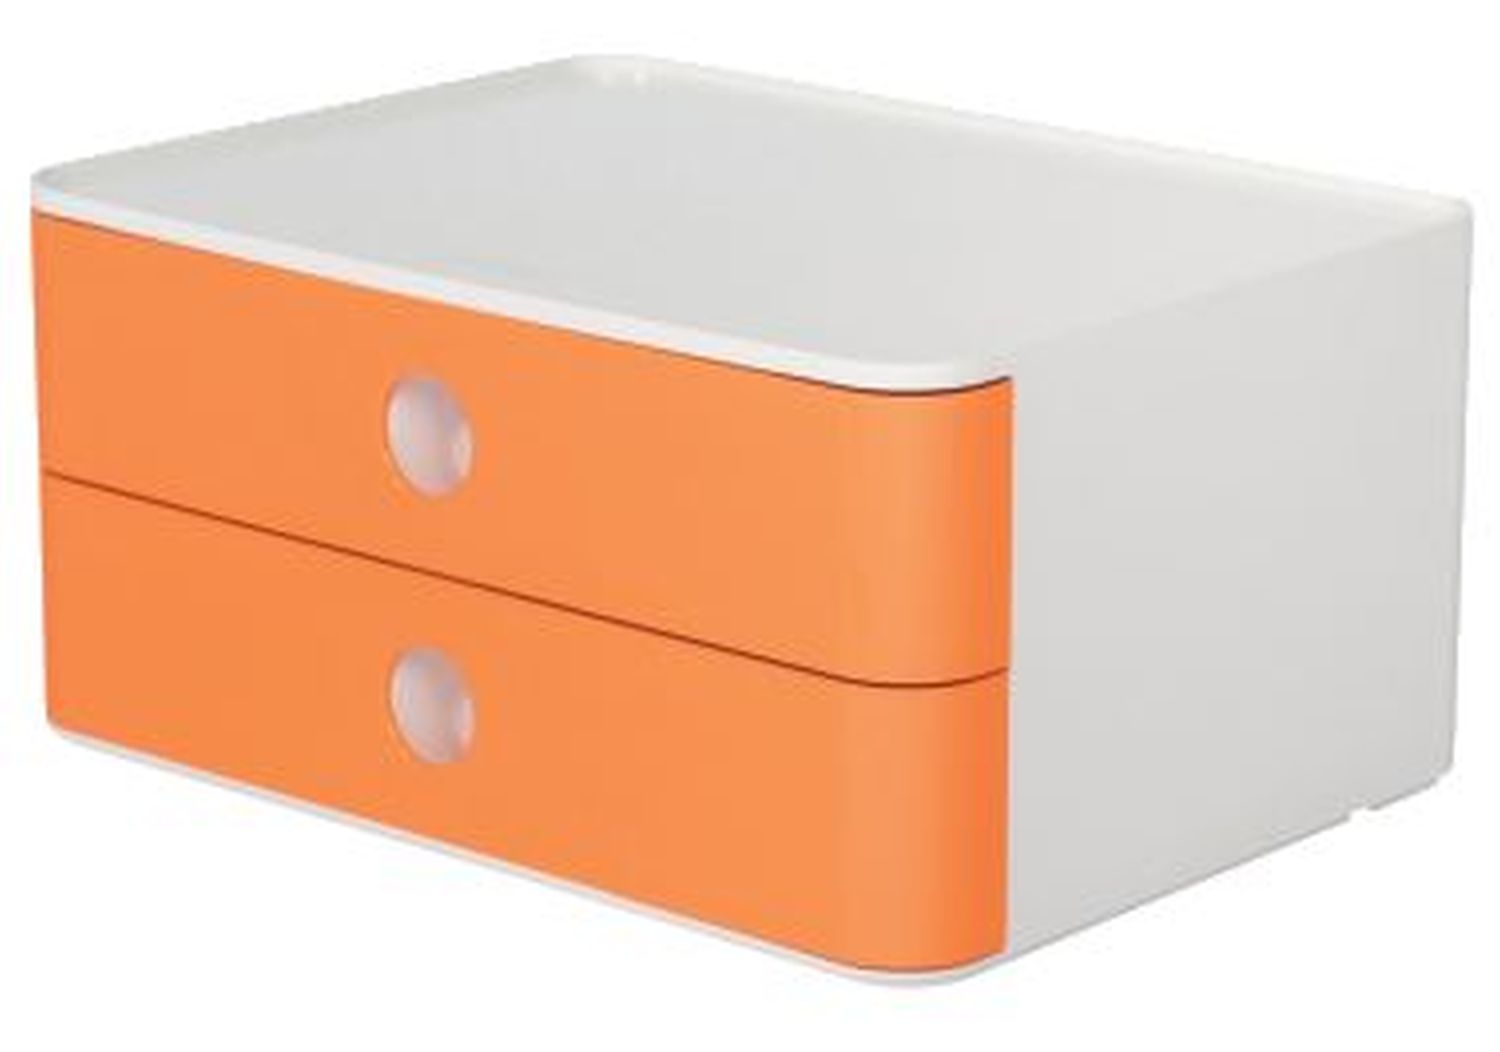 HAN 1120-81 Allison Schubladenbox 2 Laden weiß/apricot orange